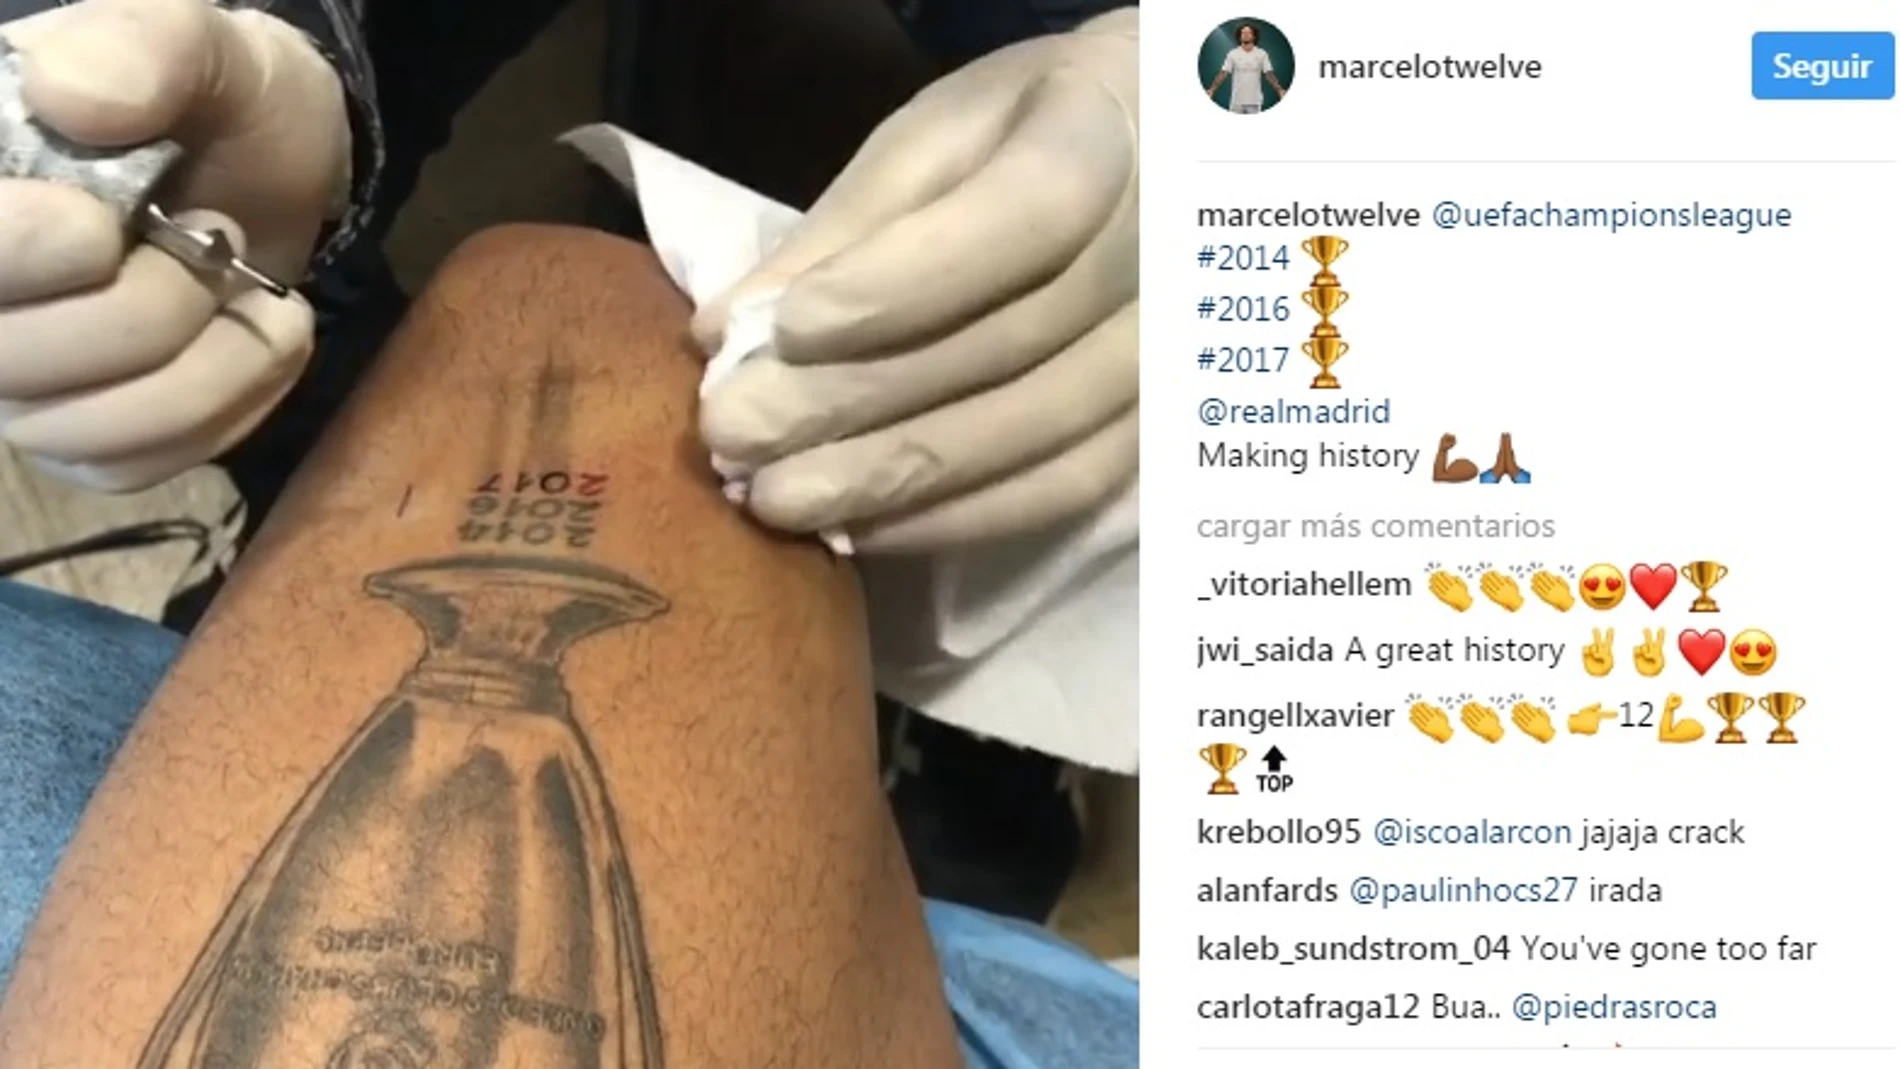 Marcelo amplía su tatuaje con una nueva Champions